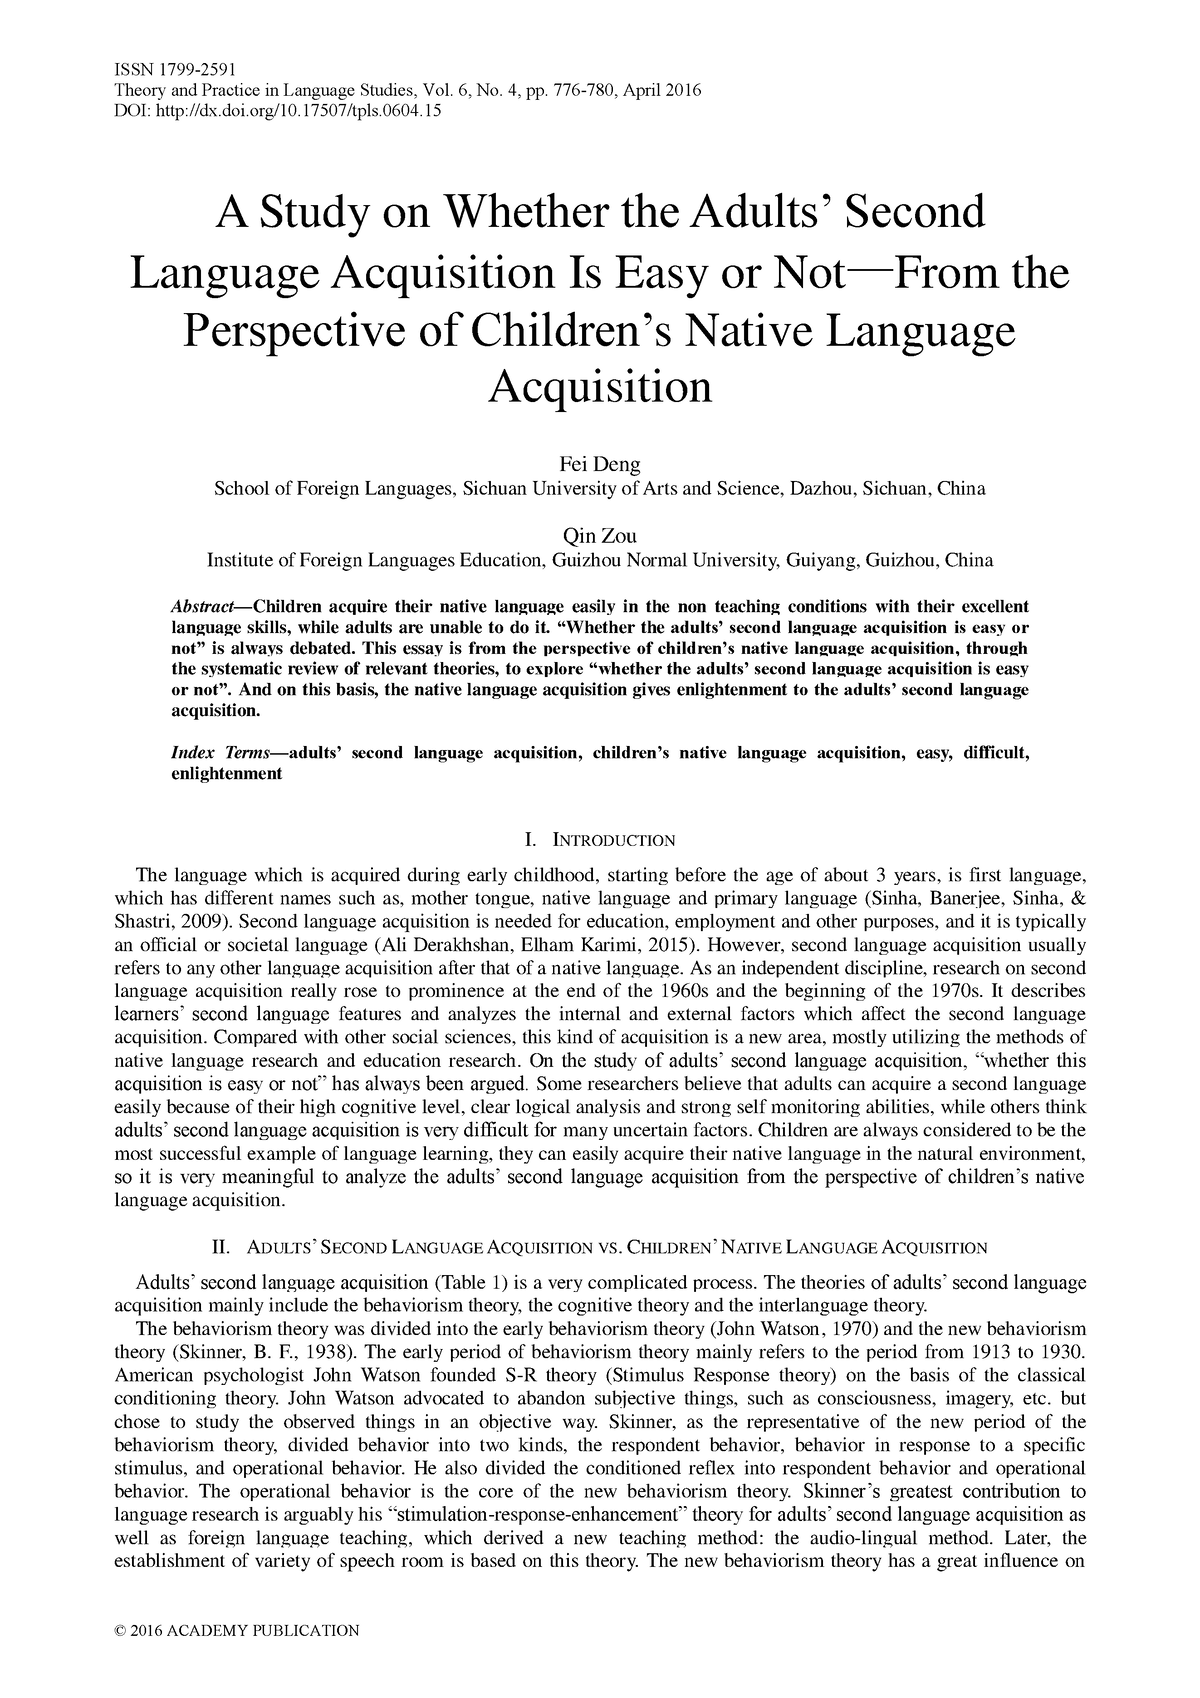 language acquisition thesis